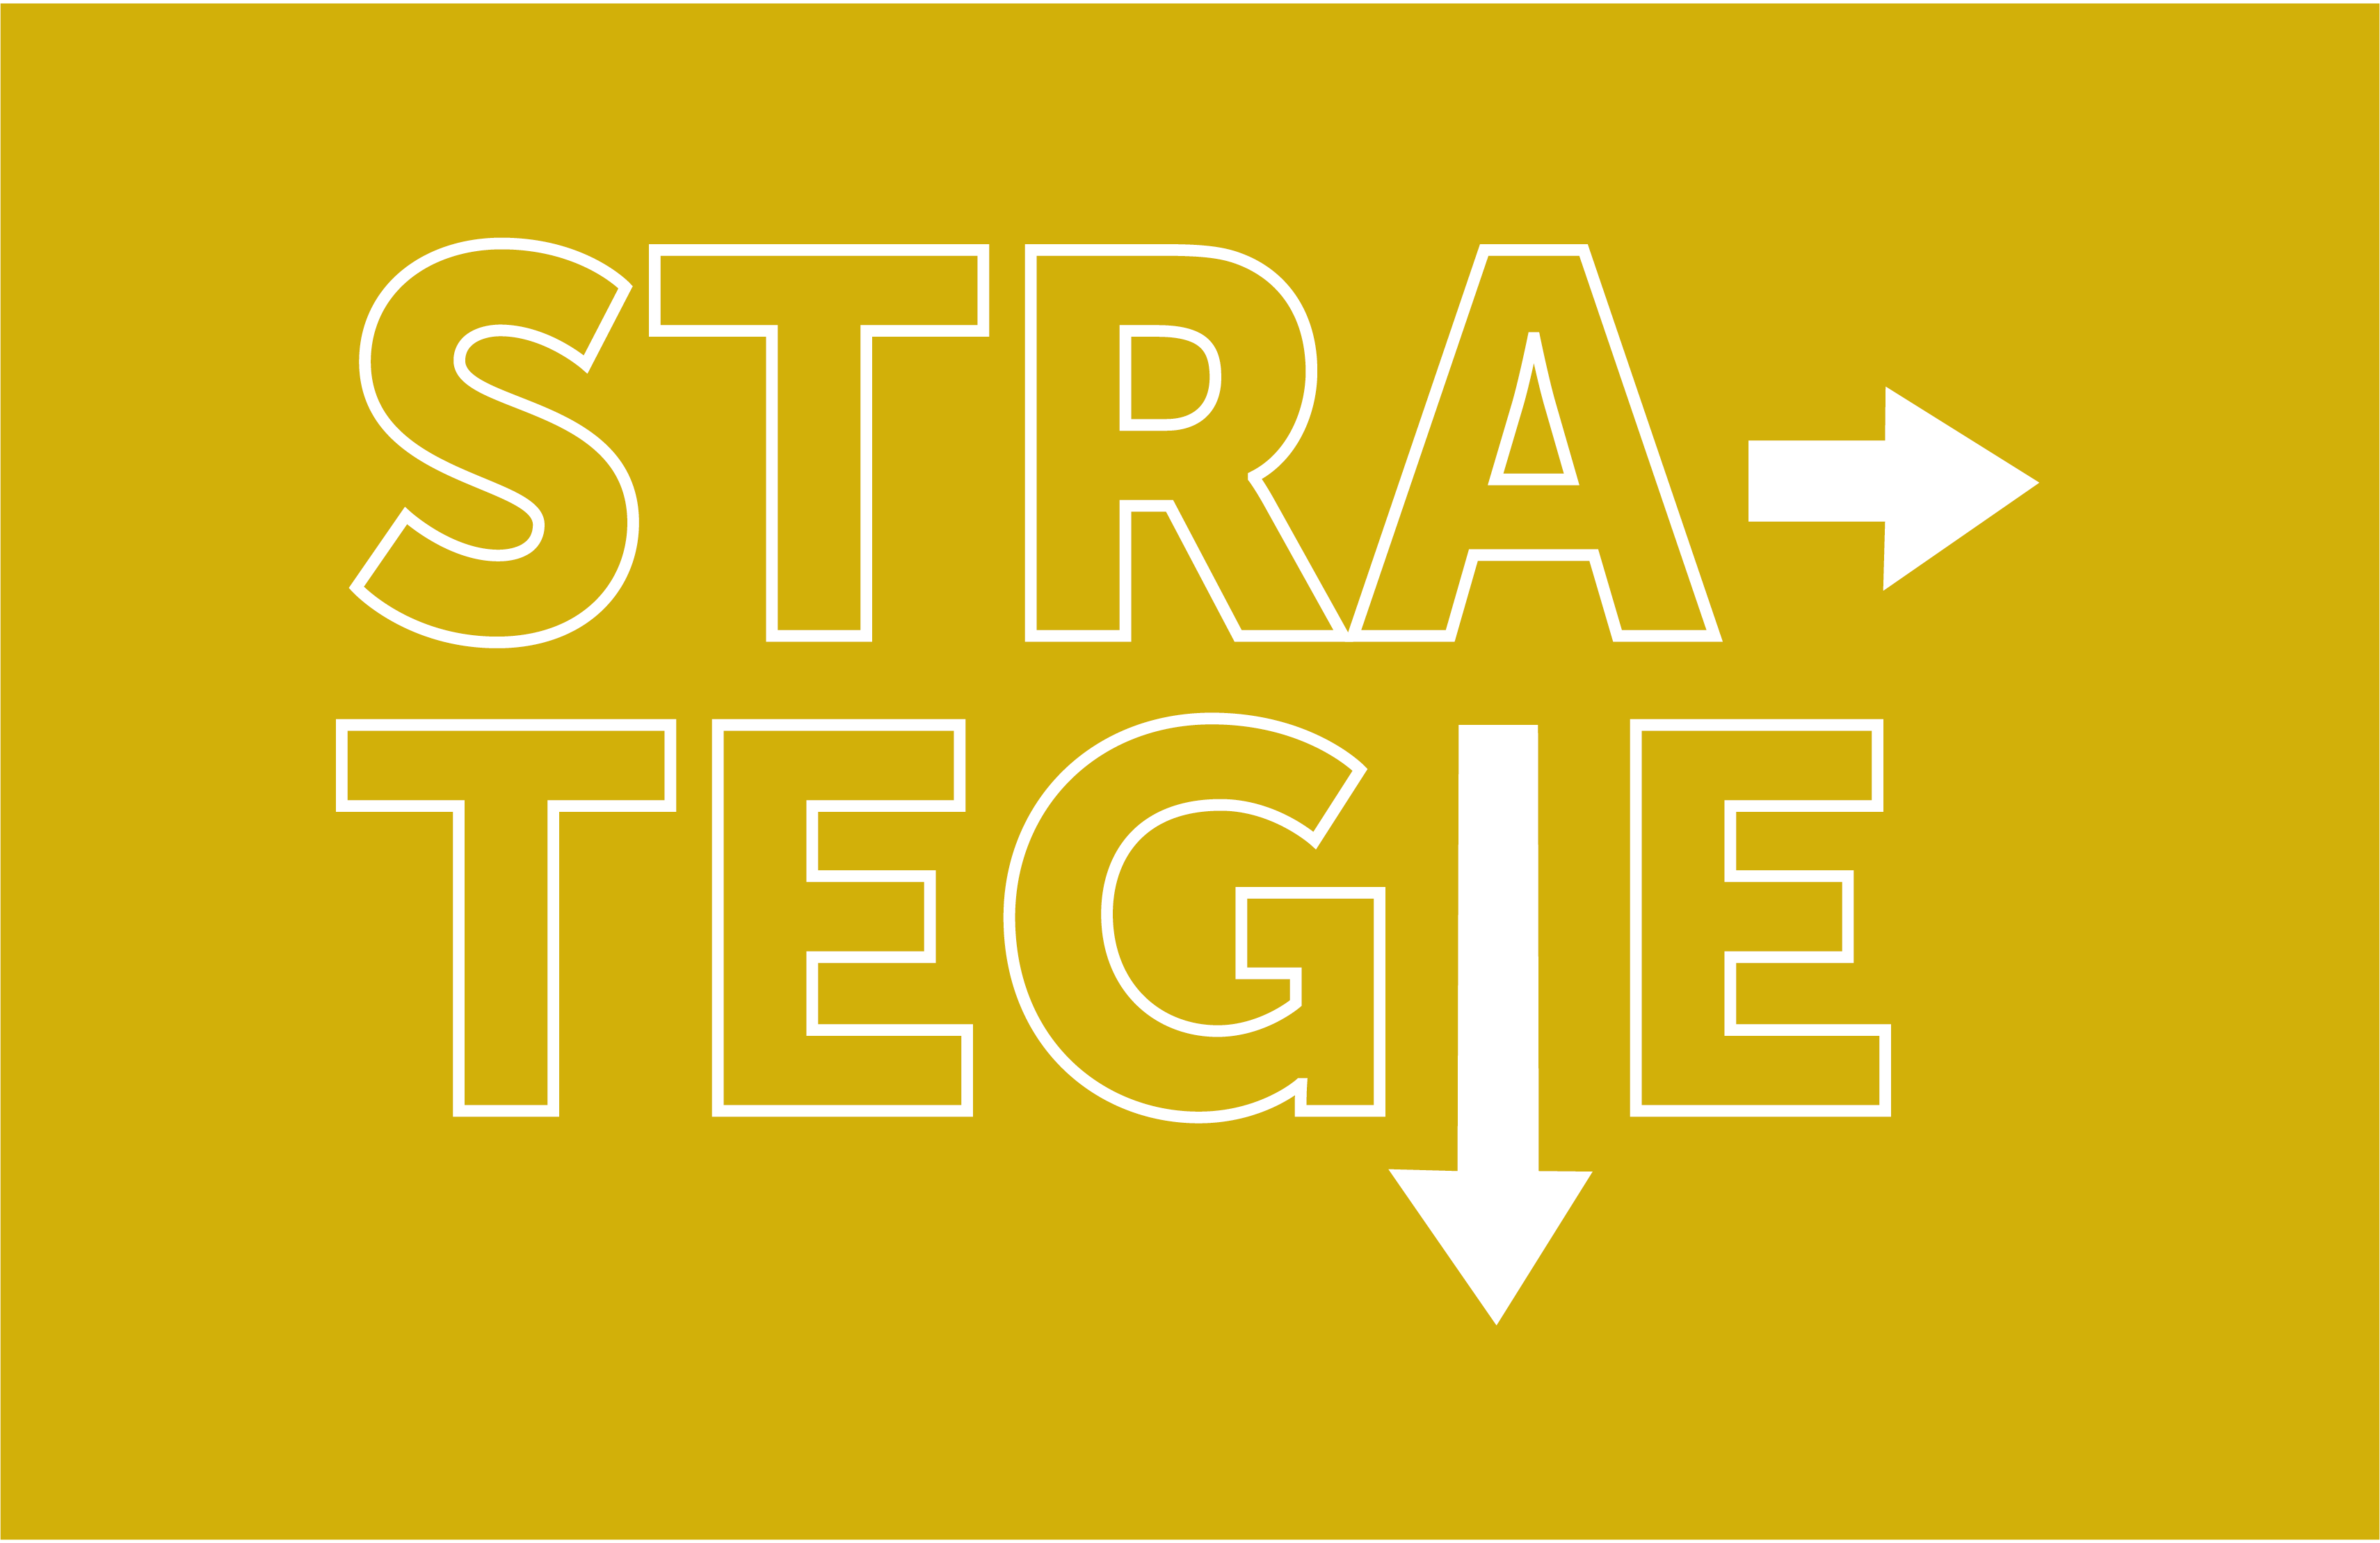 strategie_Tekengebied 1